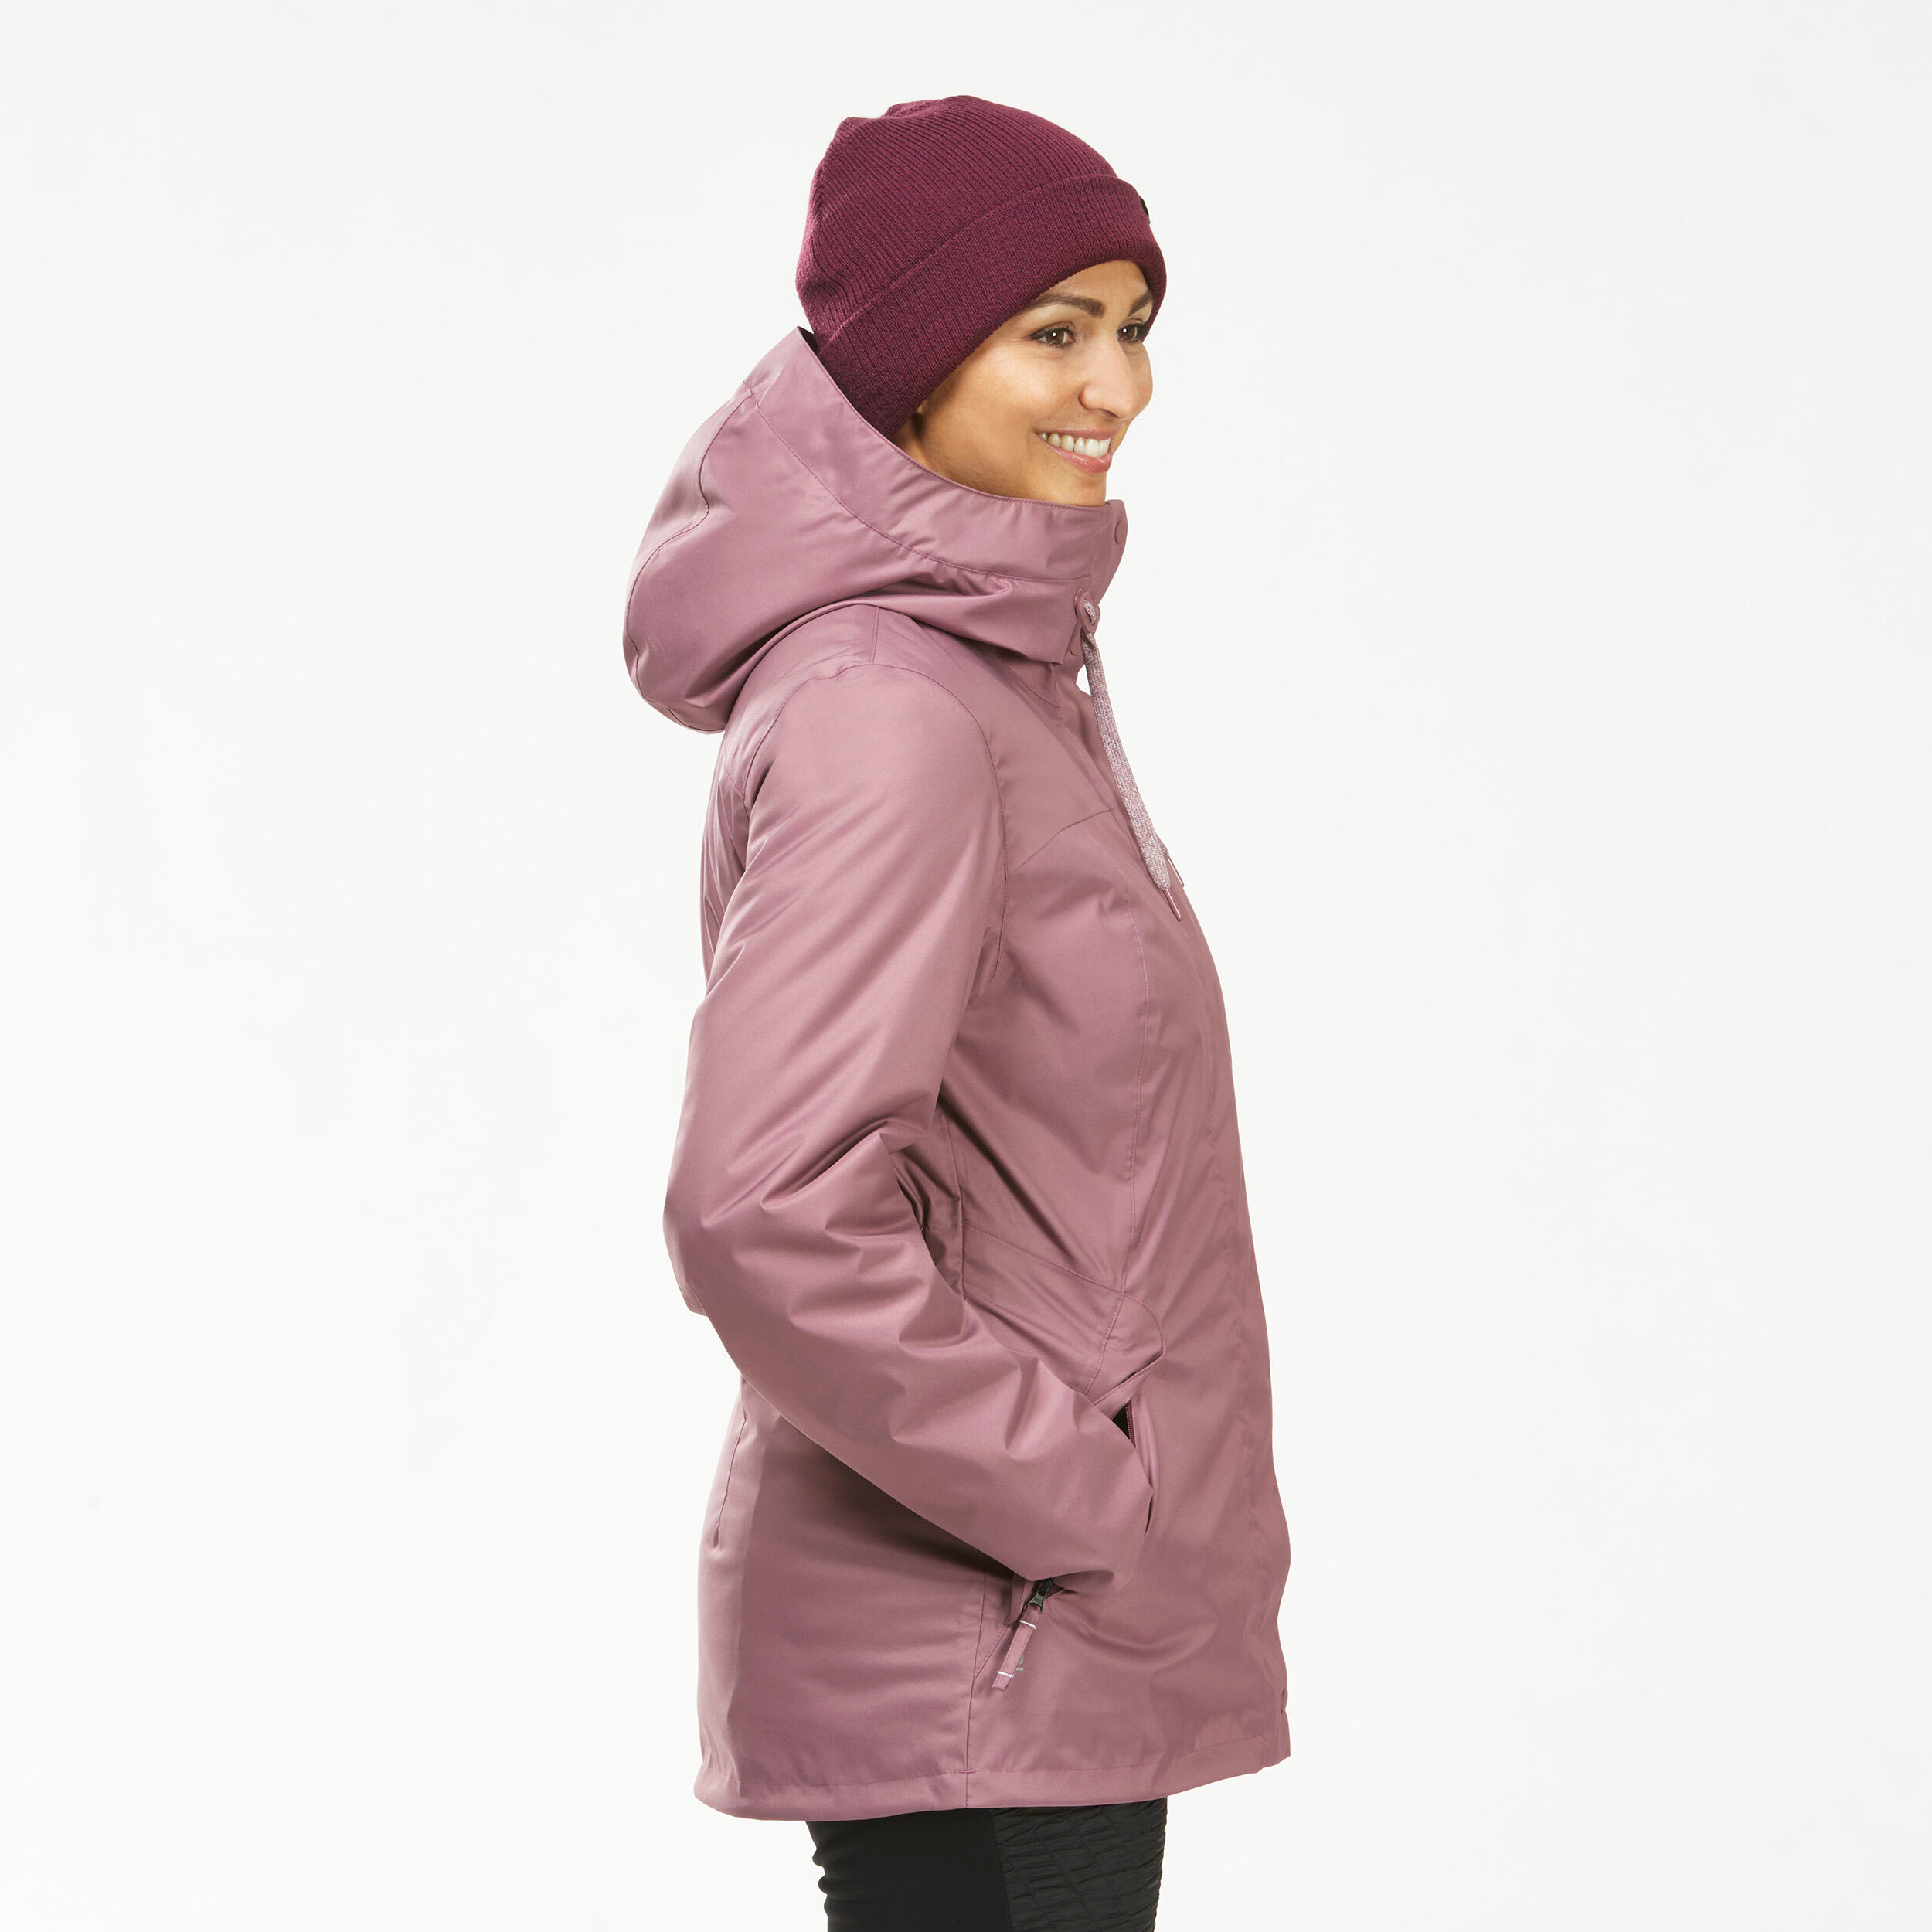 Women’s hiking waterproof winter jacket - SH500 -10°C 6/11